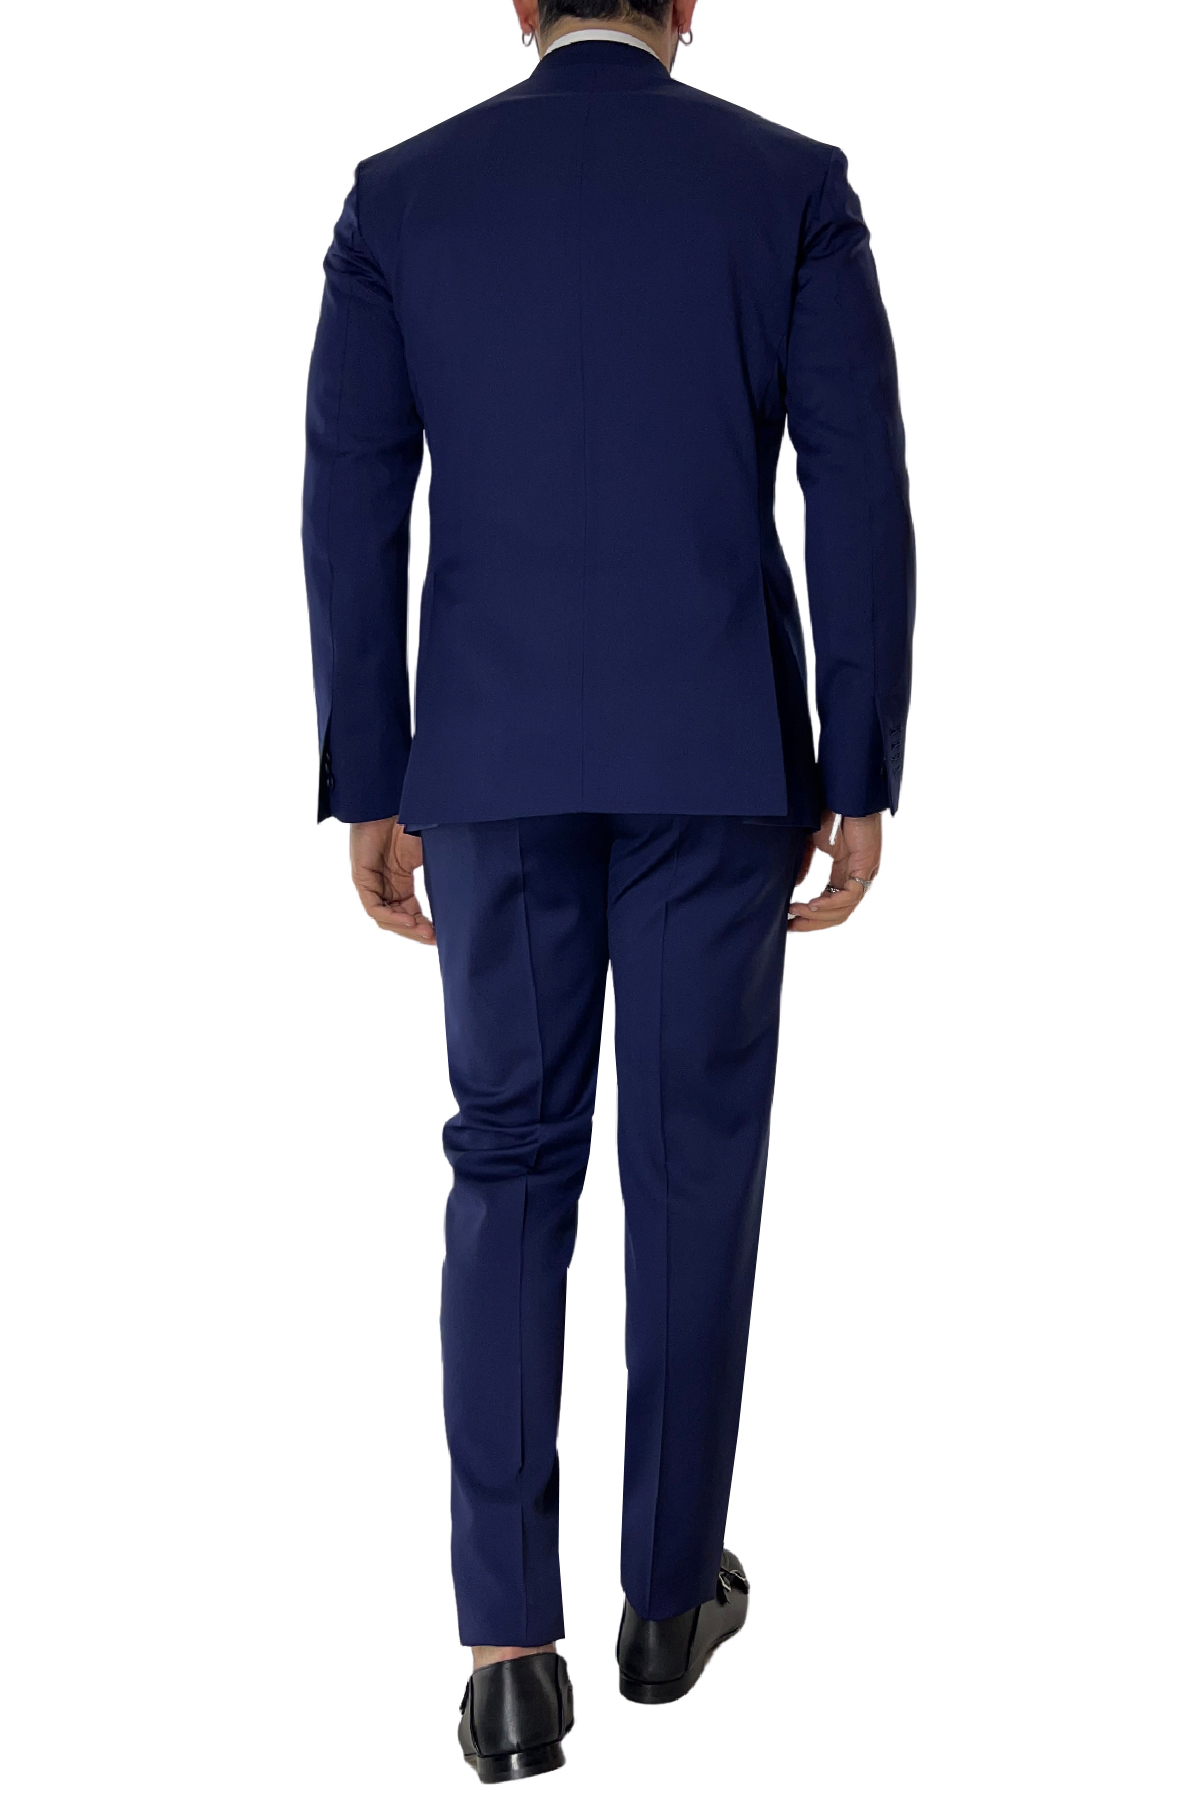 Abito uomo con giacca doppiopetto blu royal rever a lancia e pantalone tasca america in fresco lana 100% Vitale Barberis Canonico